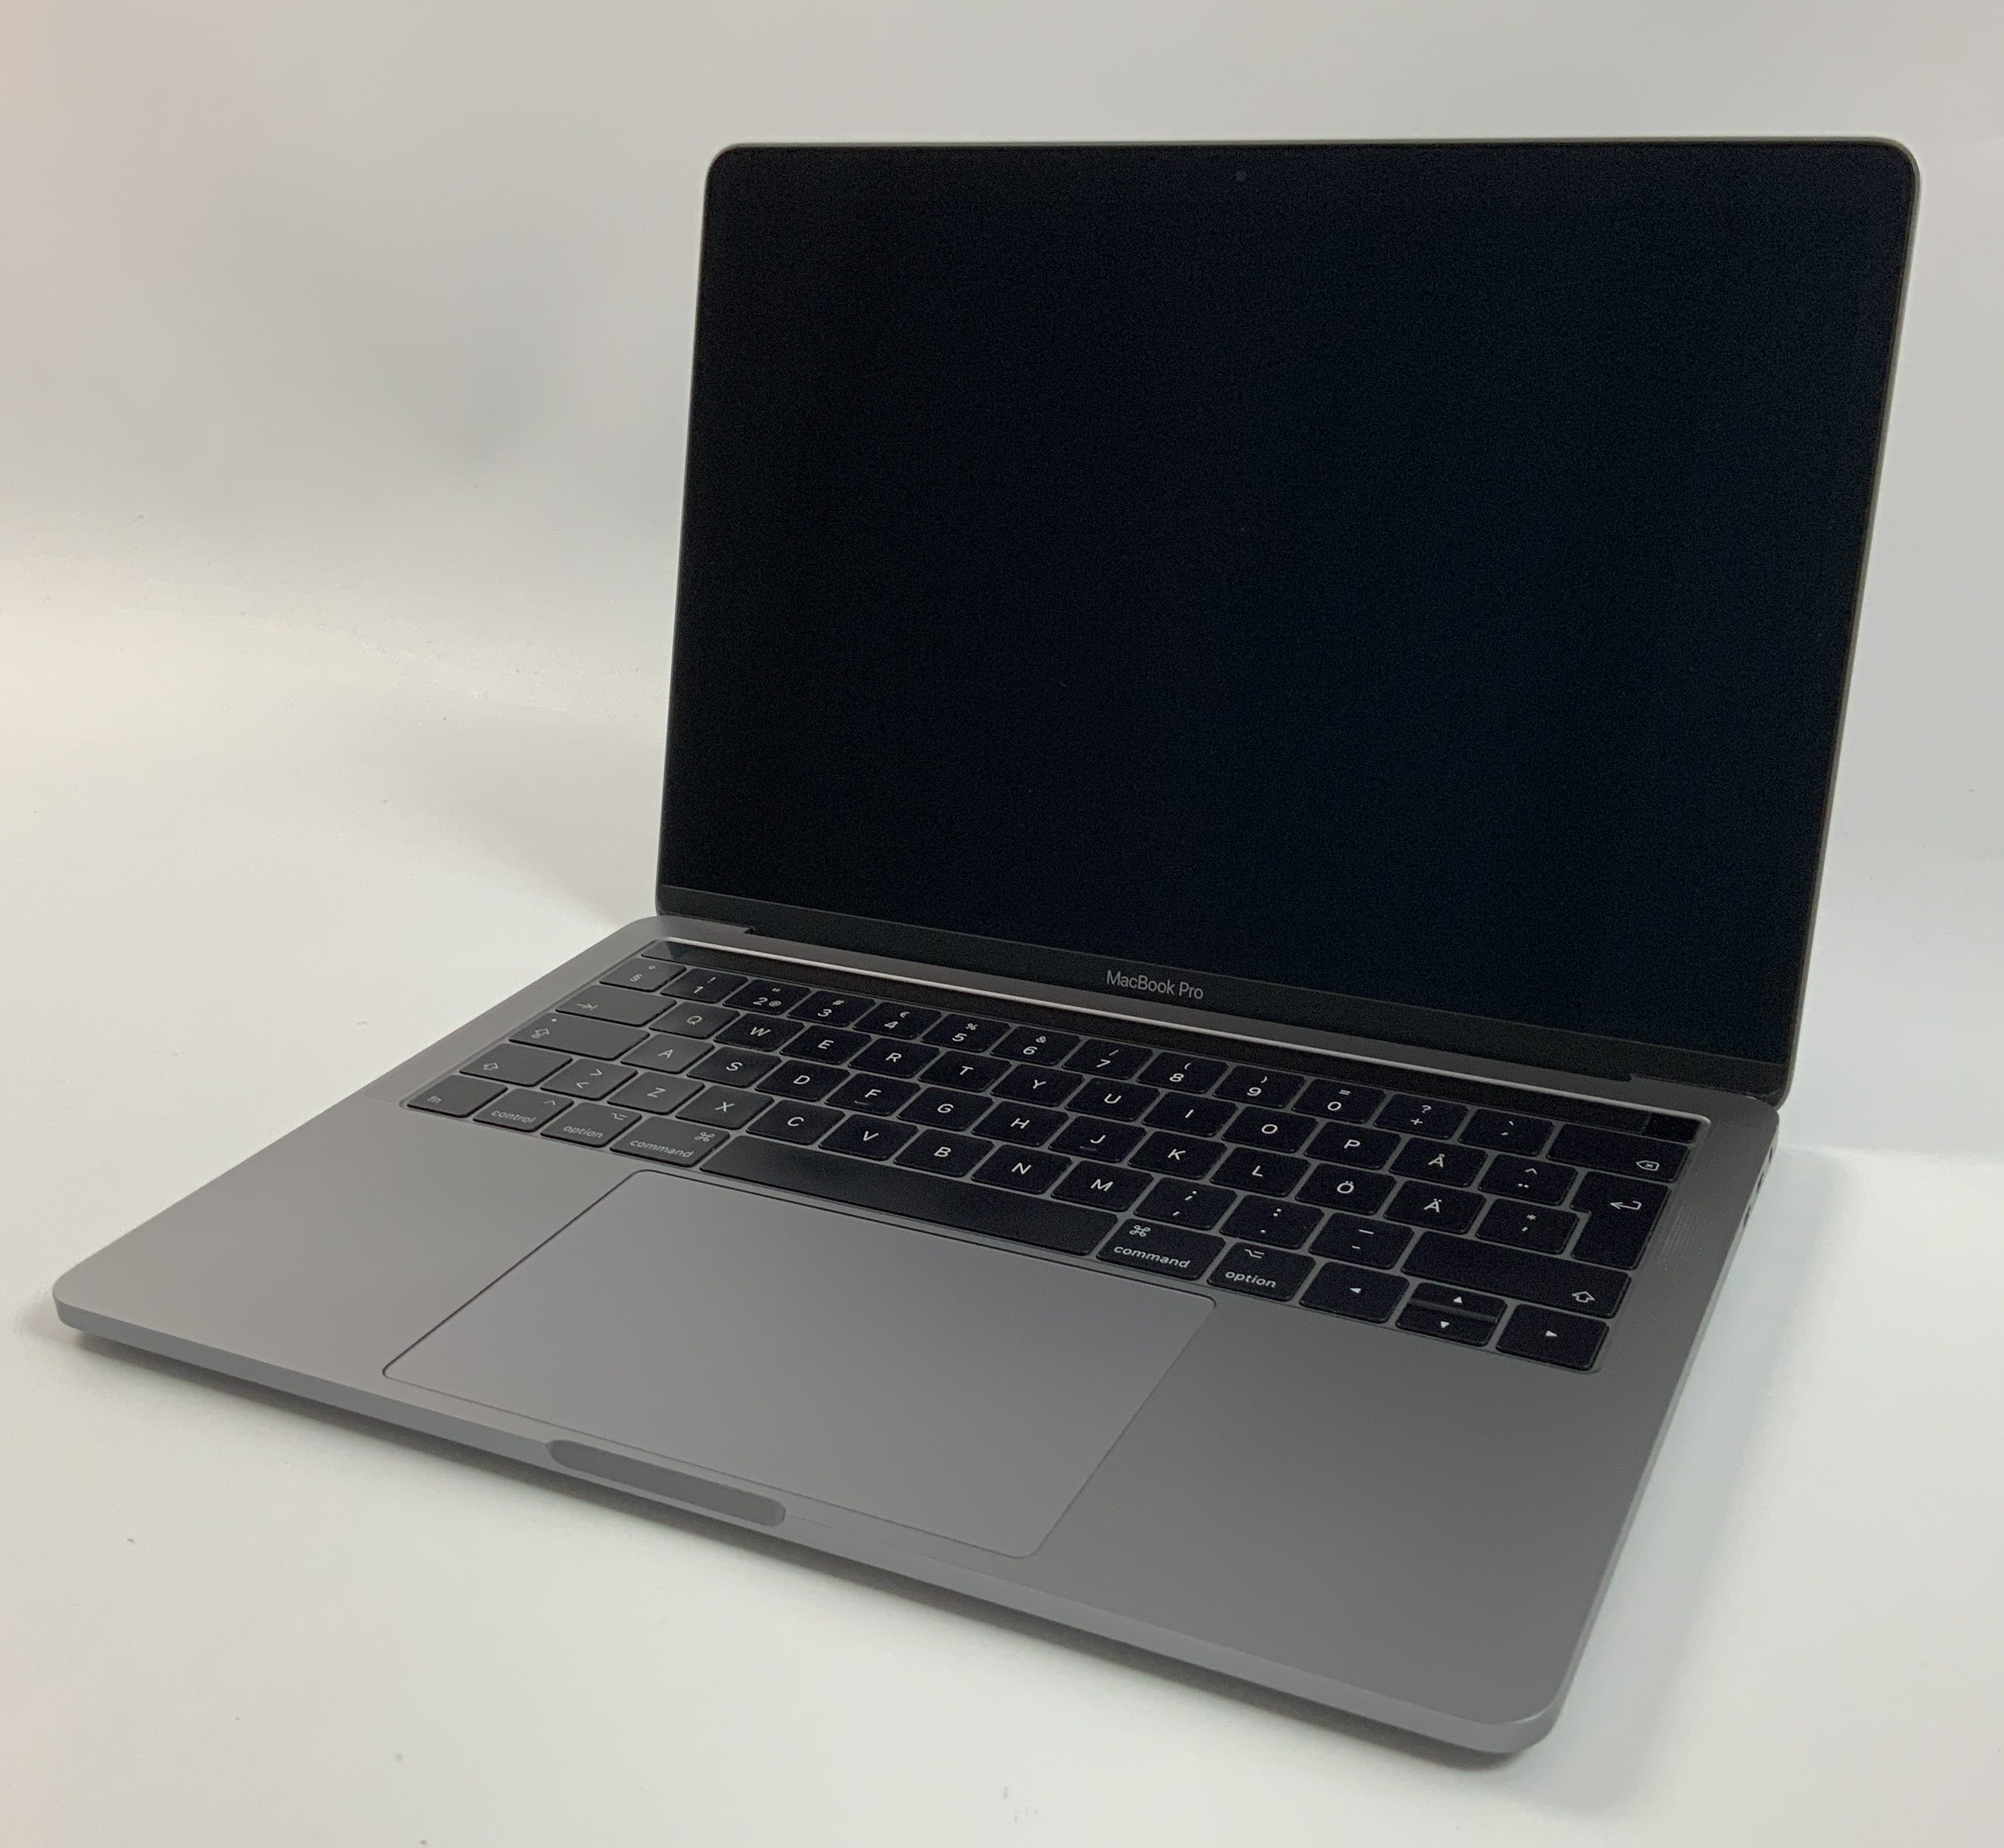 MacBook Pro 13" 4TBT Mid 2017 (Intel Core i5 3.1 GHz 8 GB RAM 256 GB SSD), Space Gray, Intel Core i5 3.1 GHz, 8 GB RAM, 256 GB SSD, Kuva 1